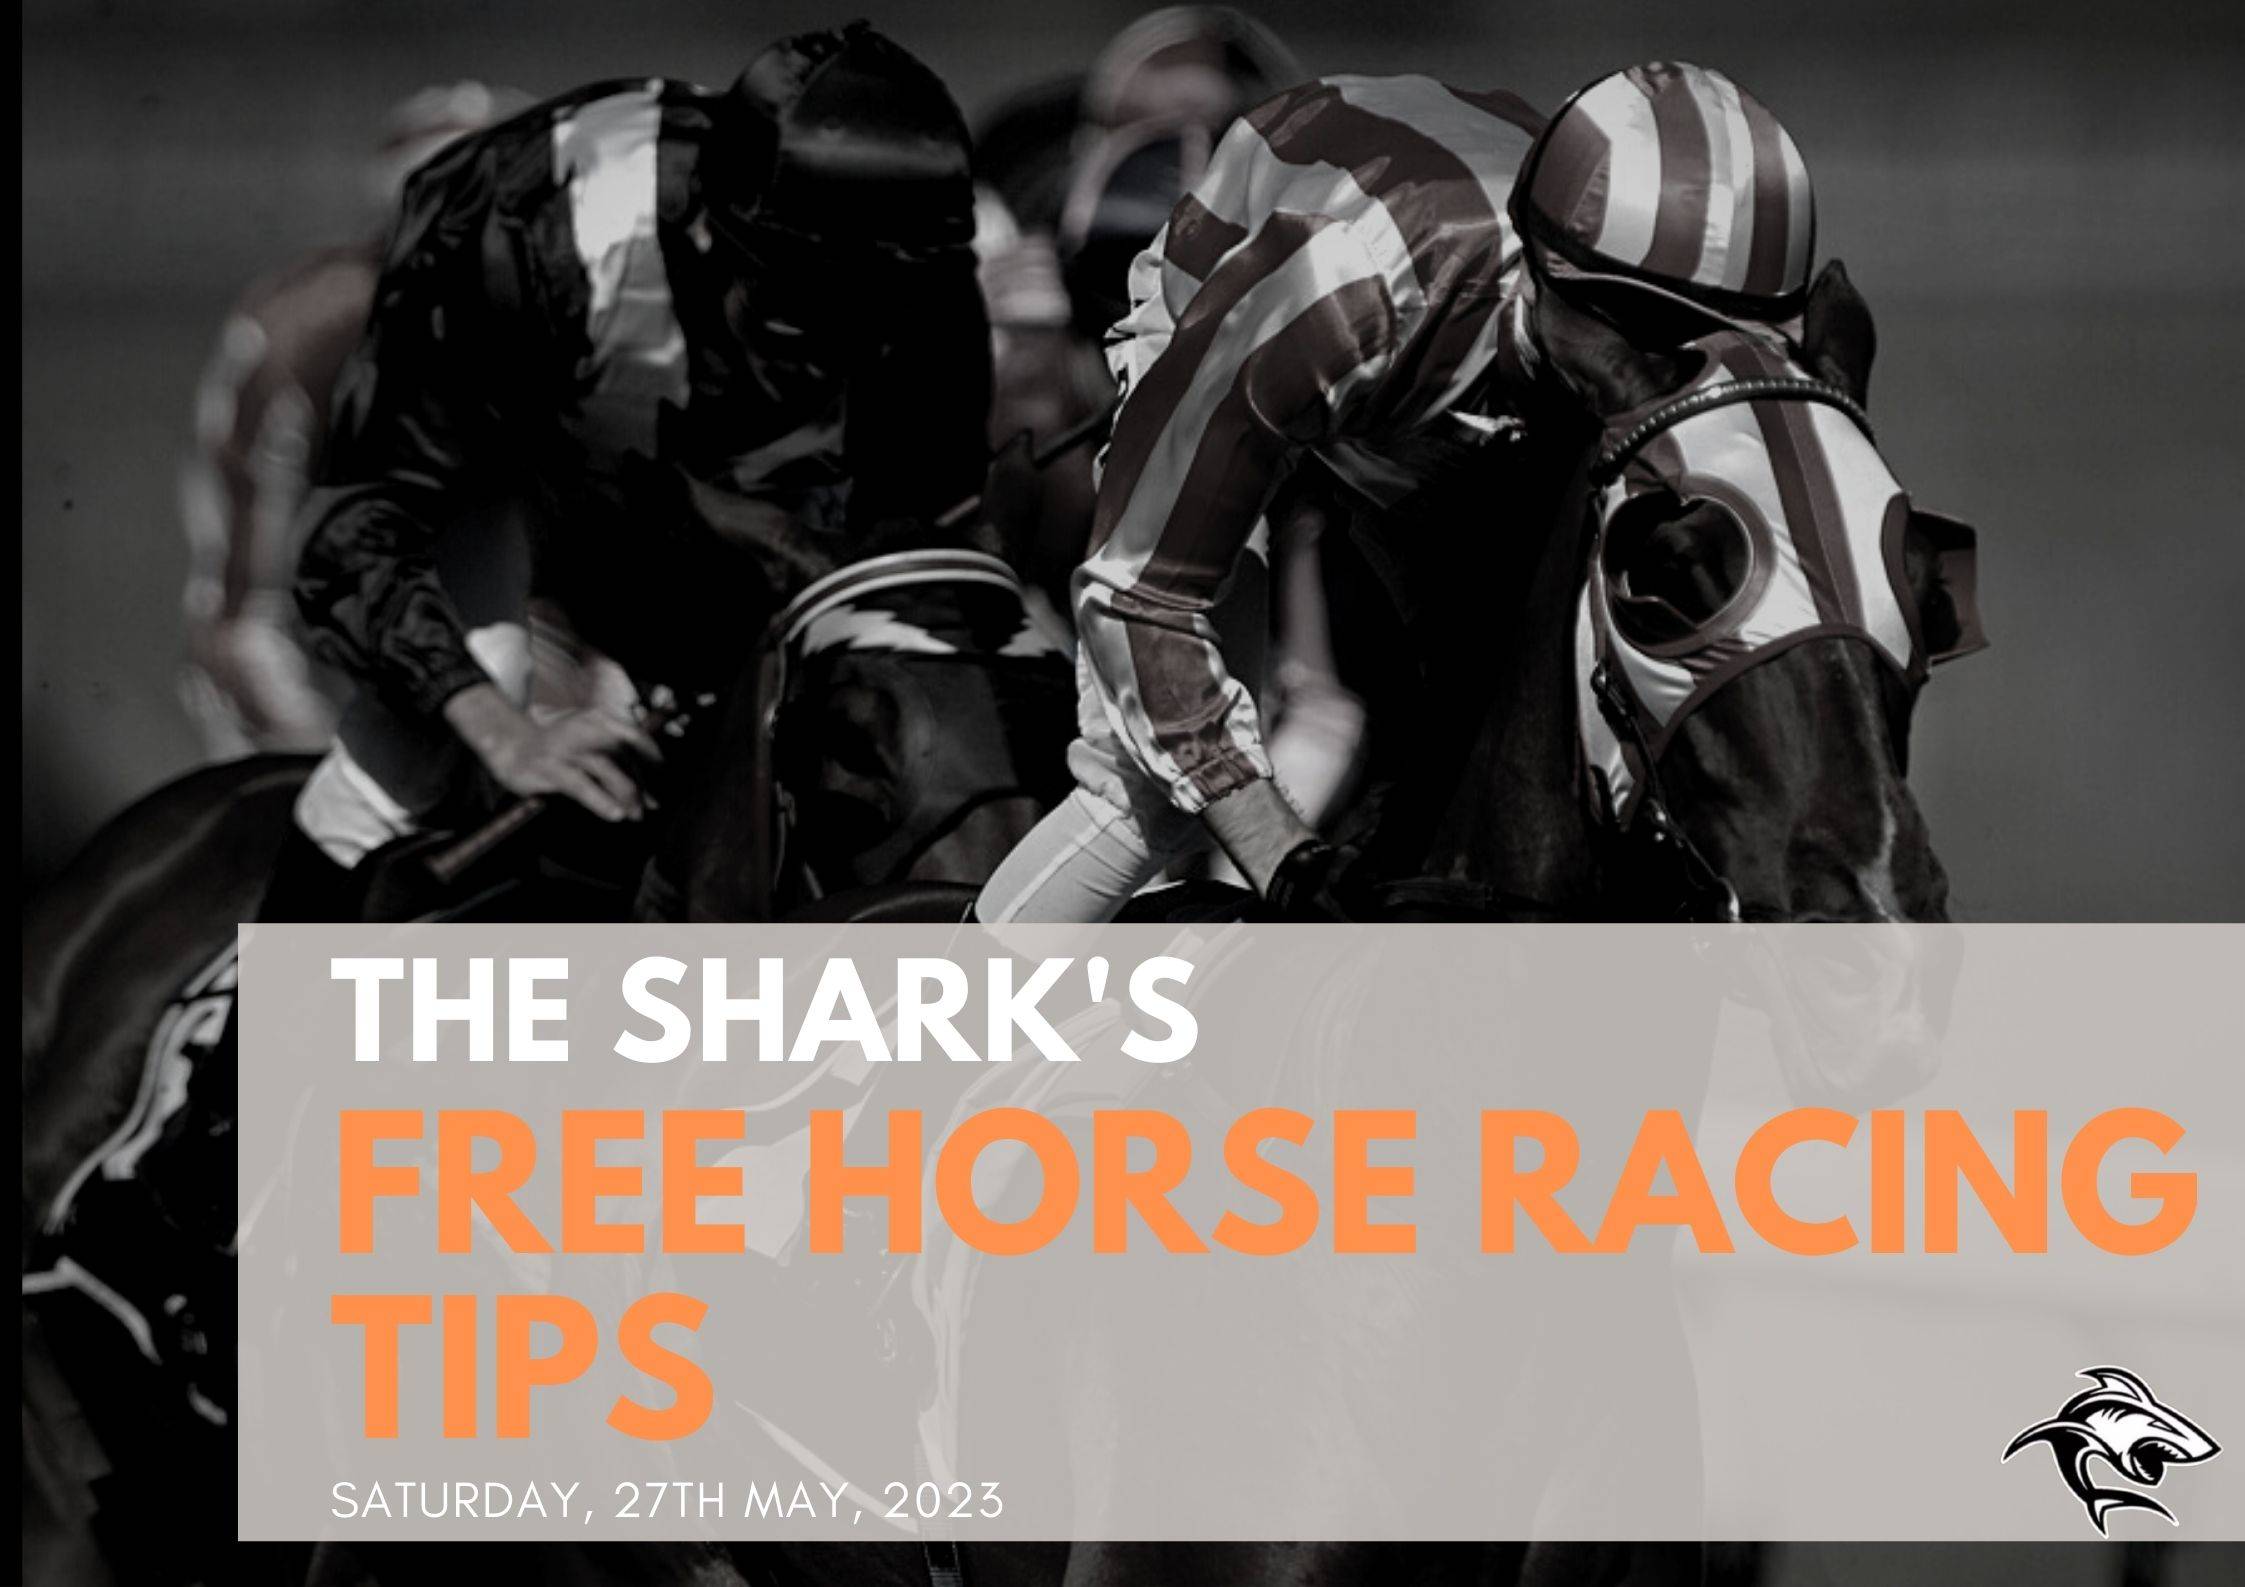 Free Horse Racing Tips - 27th May